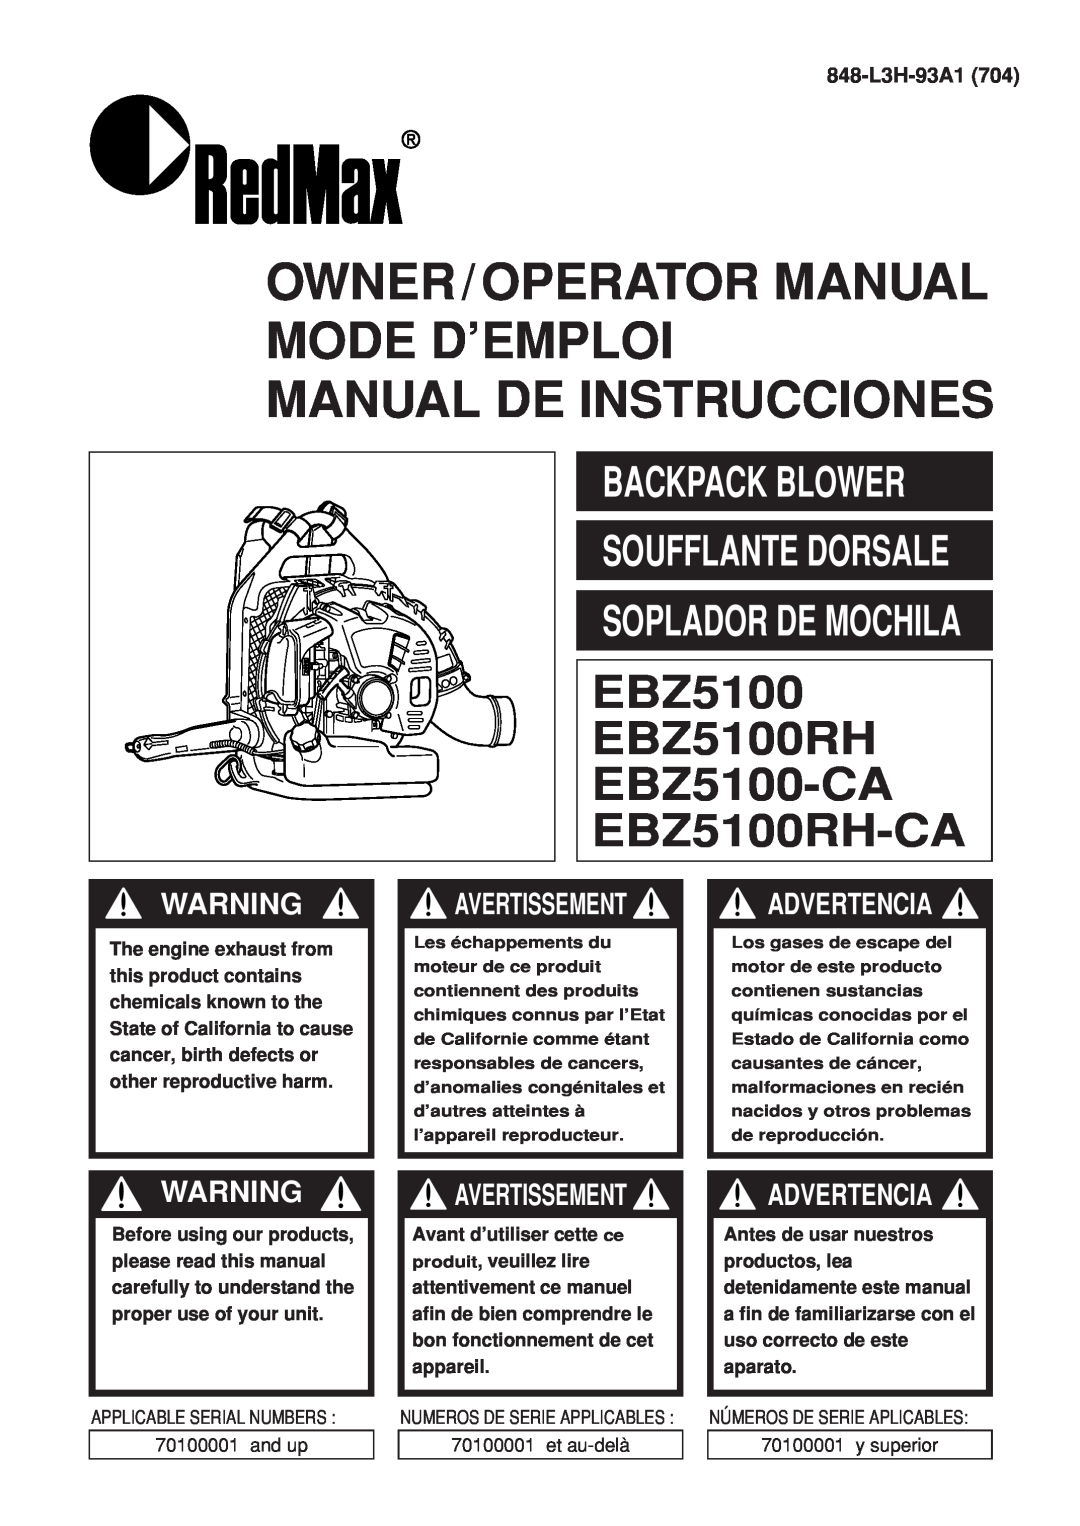 Zenoah EBZ100-CA manual Advertencia, 848-L3H-93A1704, Owner/Operator Manual Mode D’Emploi, Manual De Instrucciones 